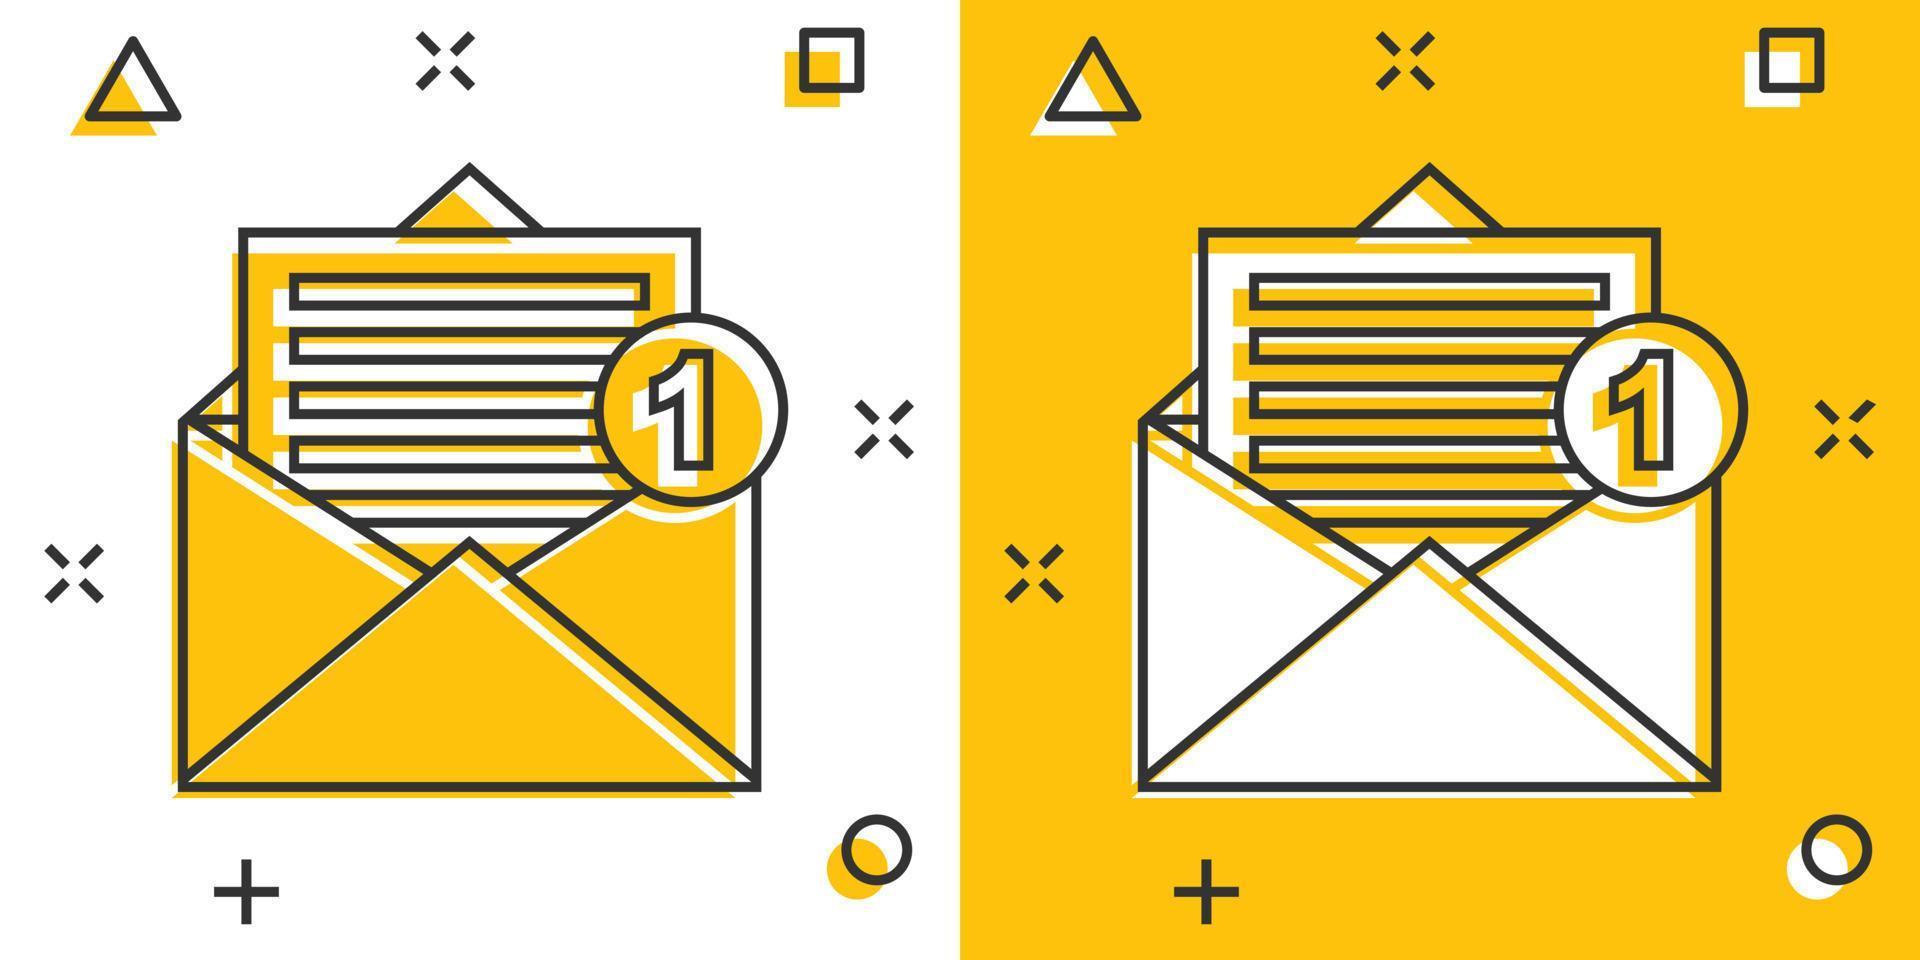 posta Busta icona nel comico stile. e-mail Messaggio vettore cartone animato illustrazione pittogramma. cassetta postale e-mail attività commerciale concetto spruzzo effetto.